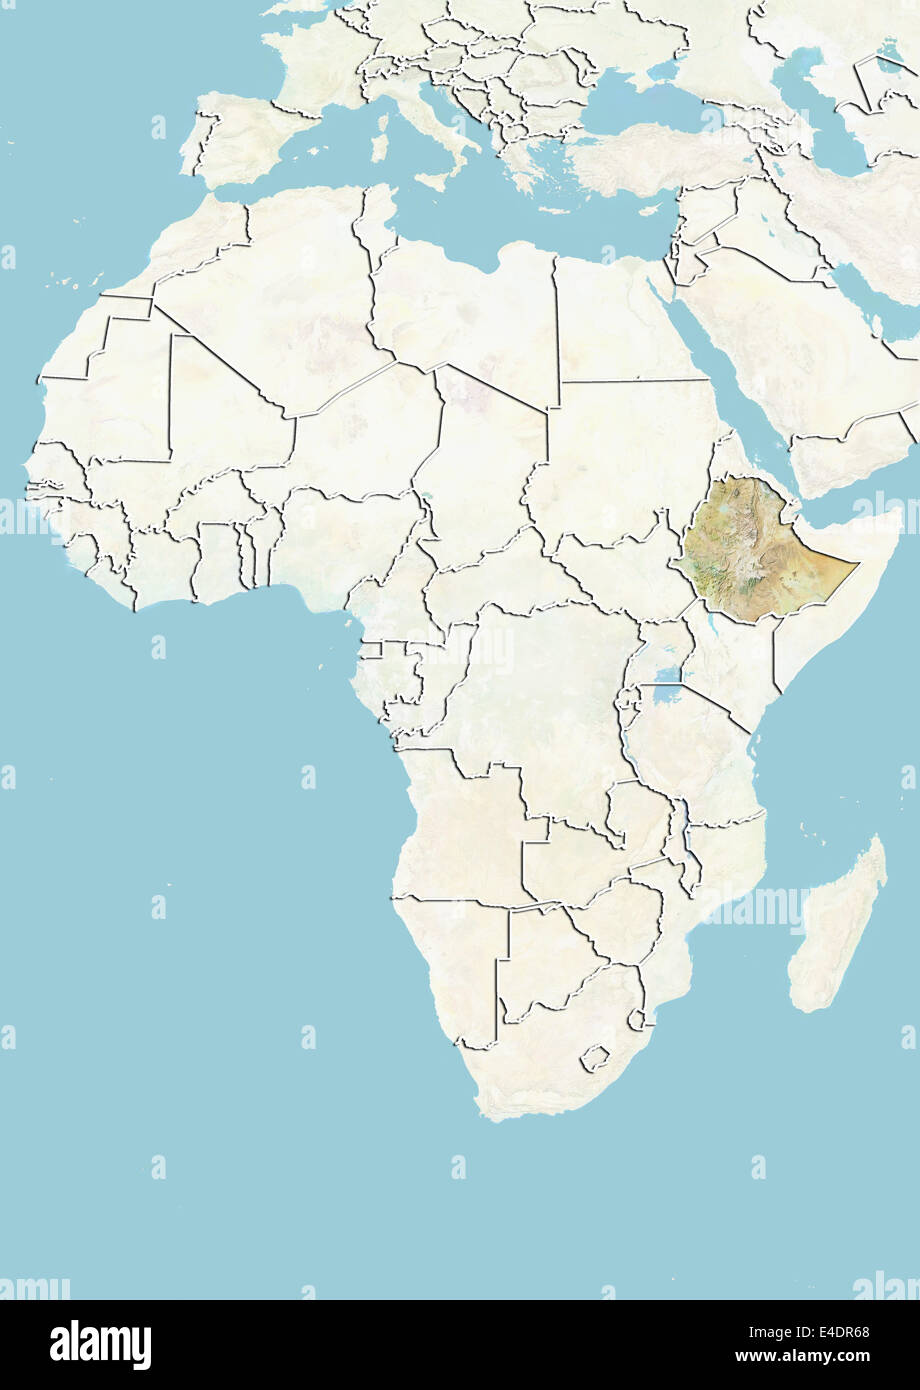 Ethiopia, Relief Map Stock Photo - Alamy